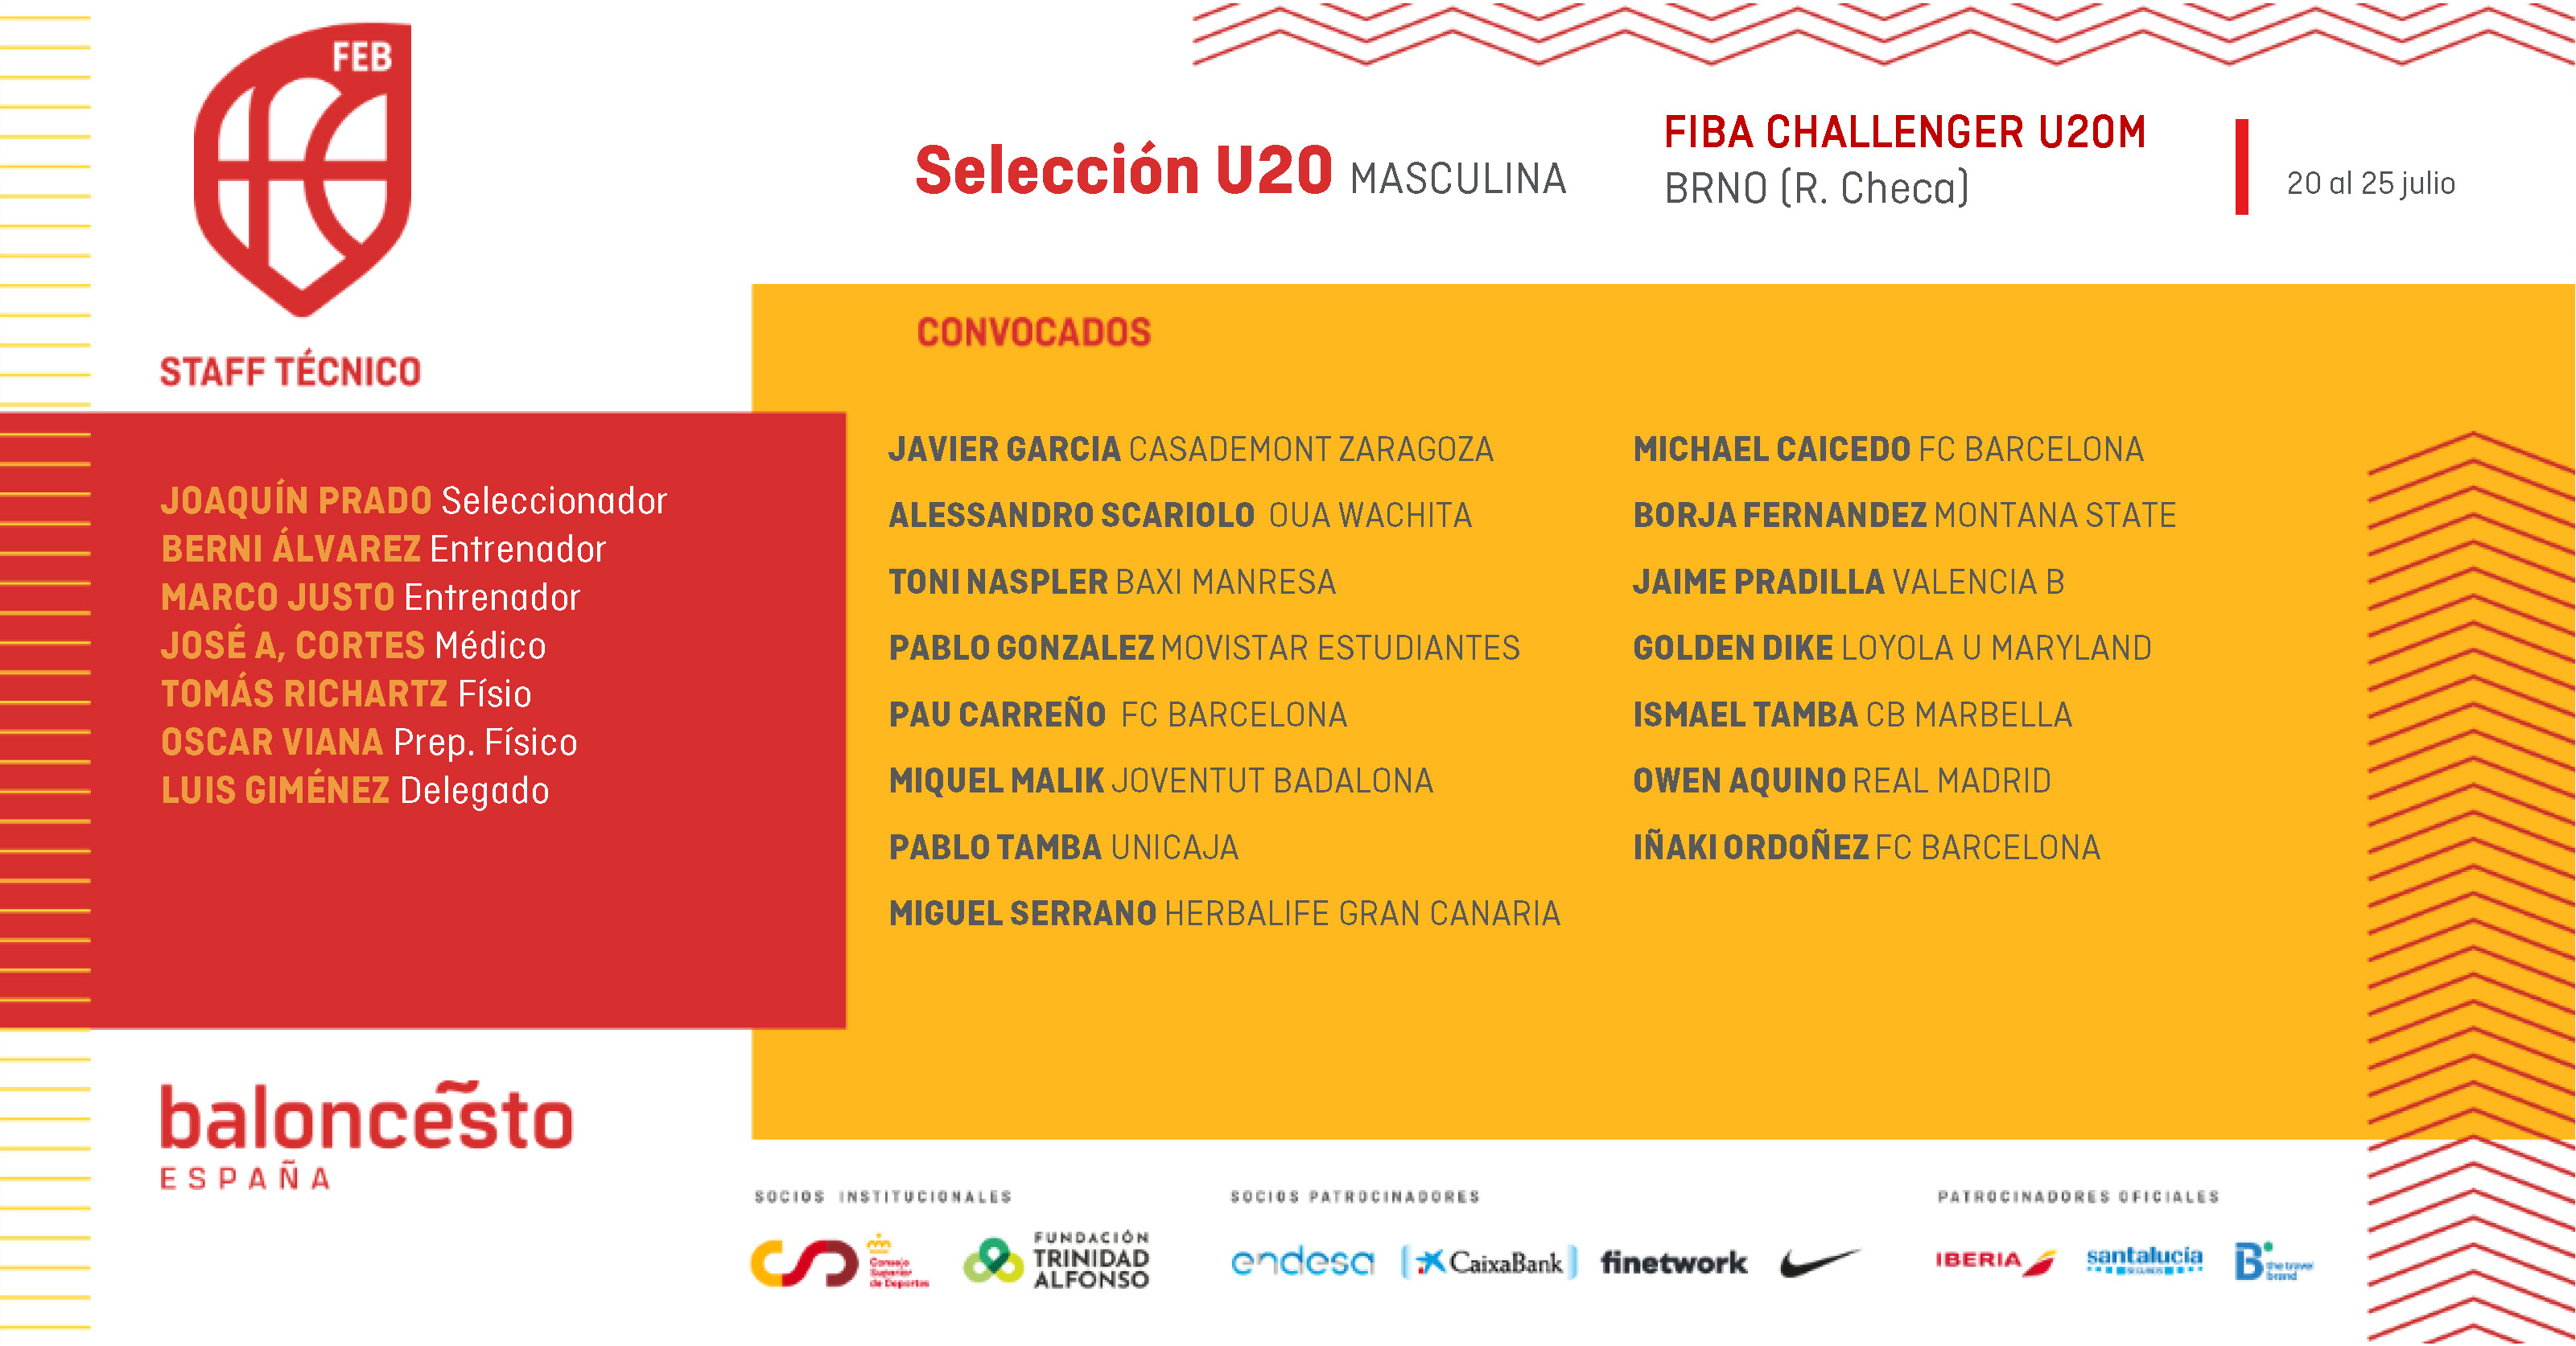 Convocatoria U20M para el FIBA Challenger 2021